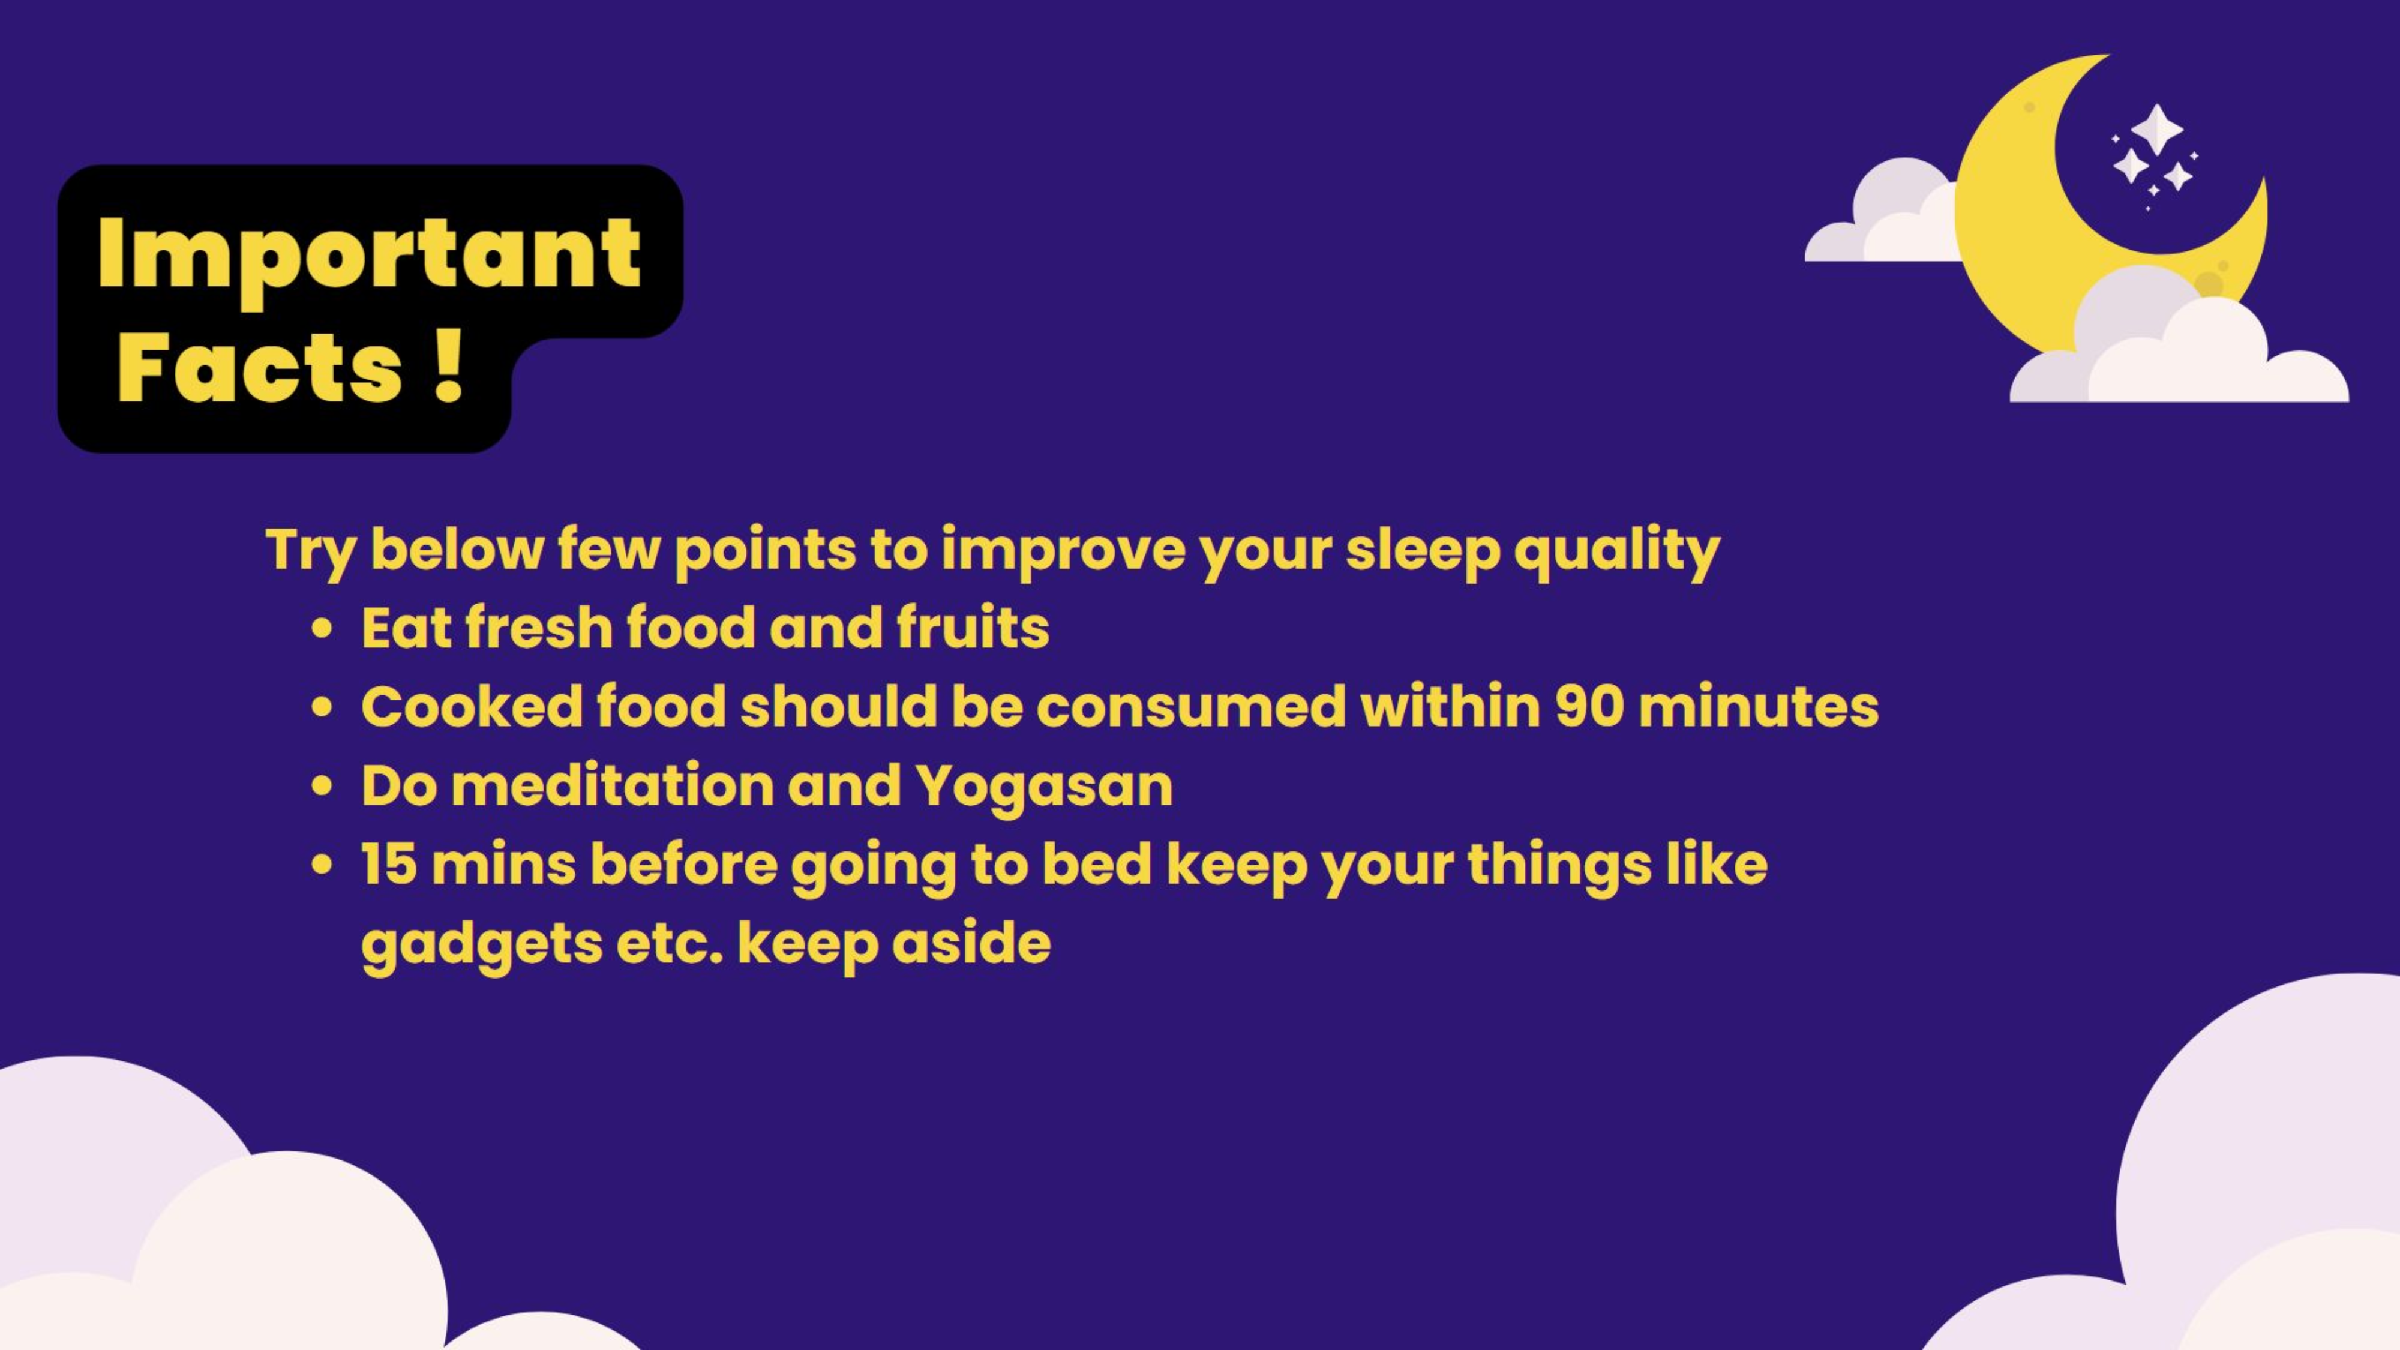 migliorare la qualità del sonno